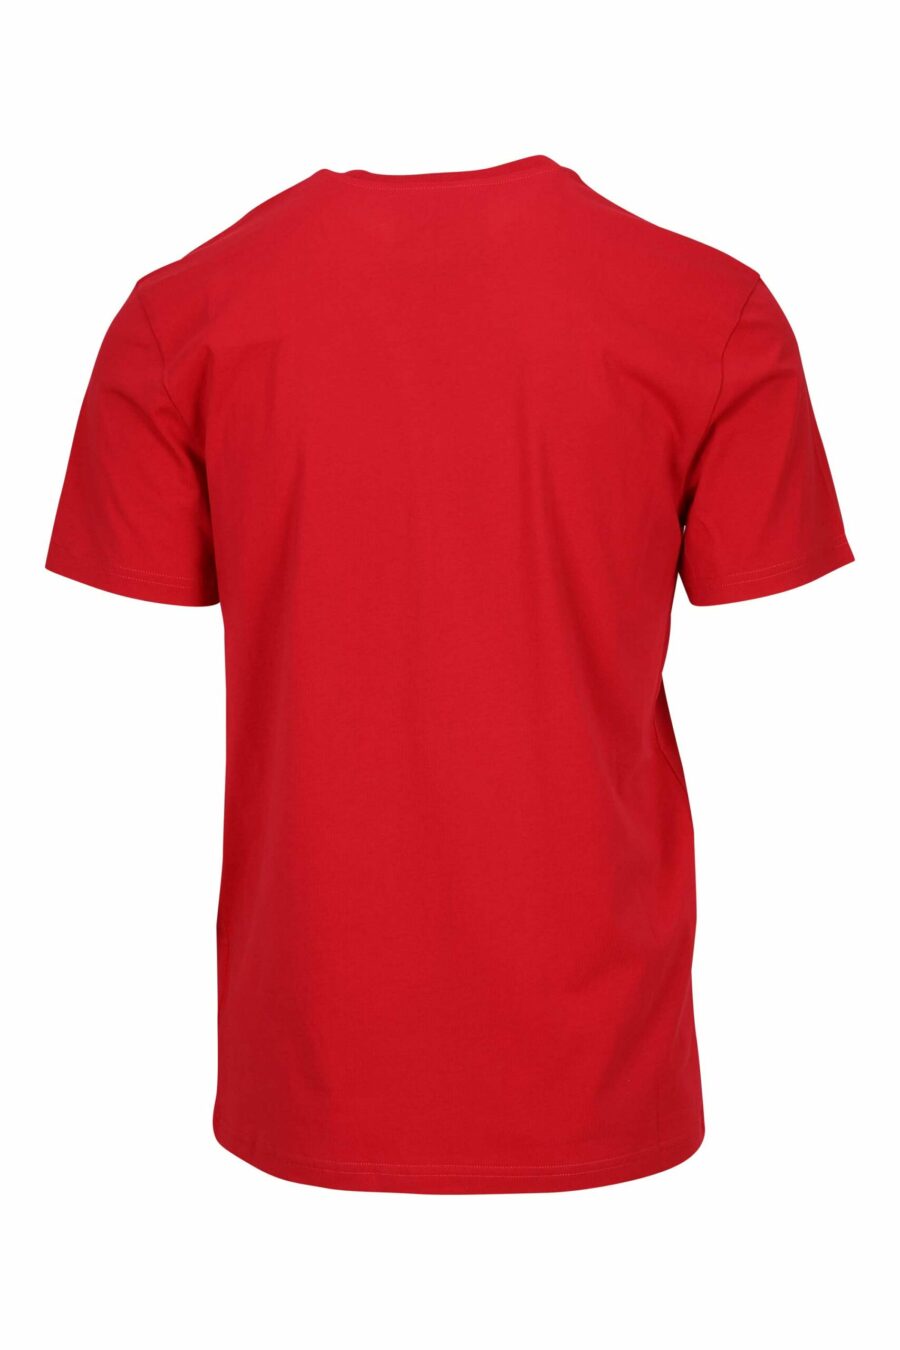 T-shirt oversize en coton bio rouge avec maxilogue noir classique - 667113751856 1 scaled